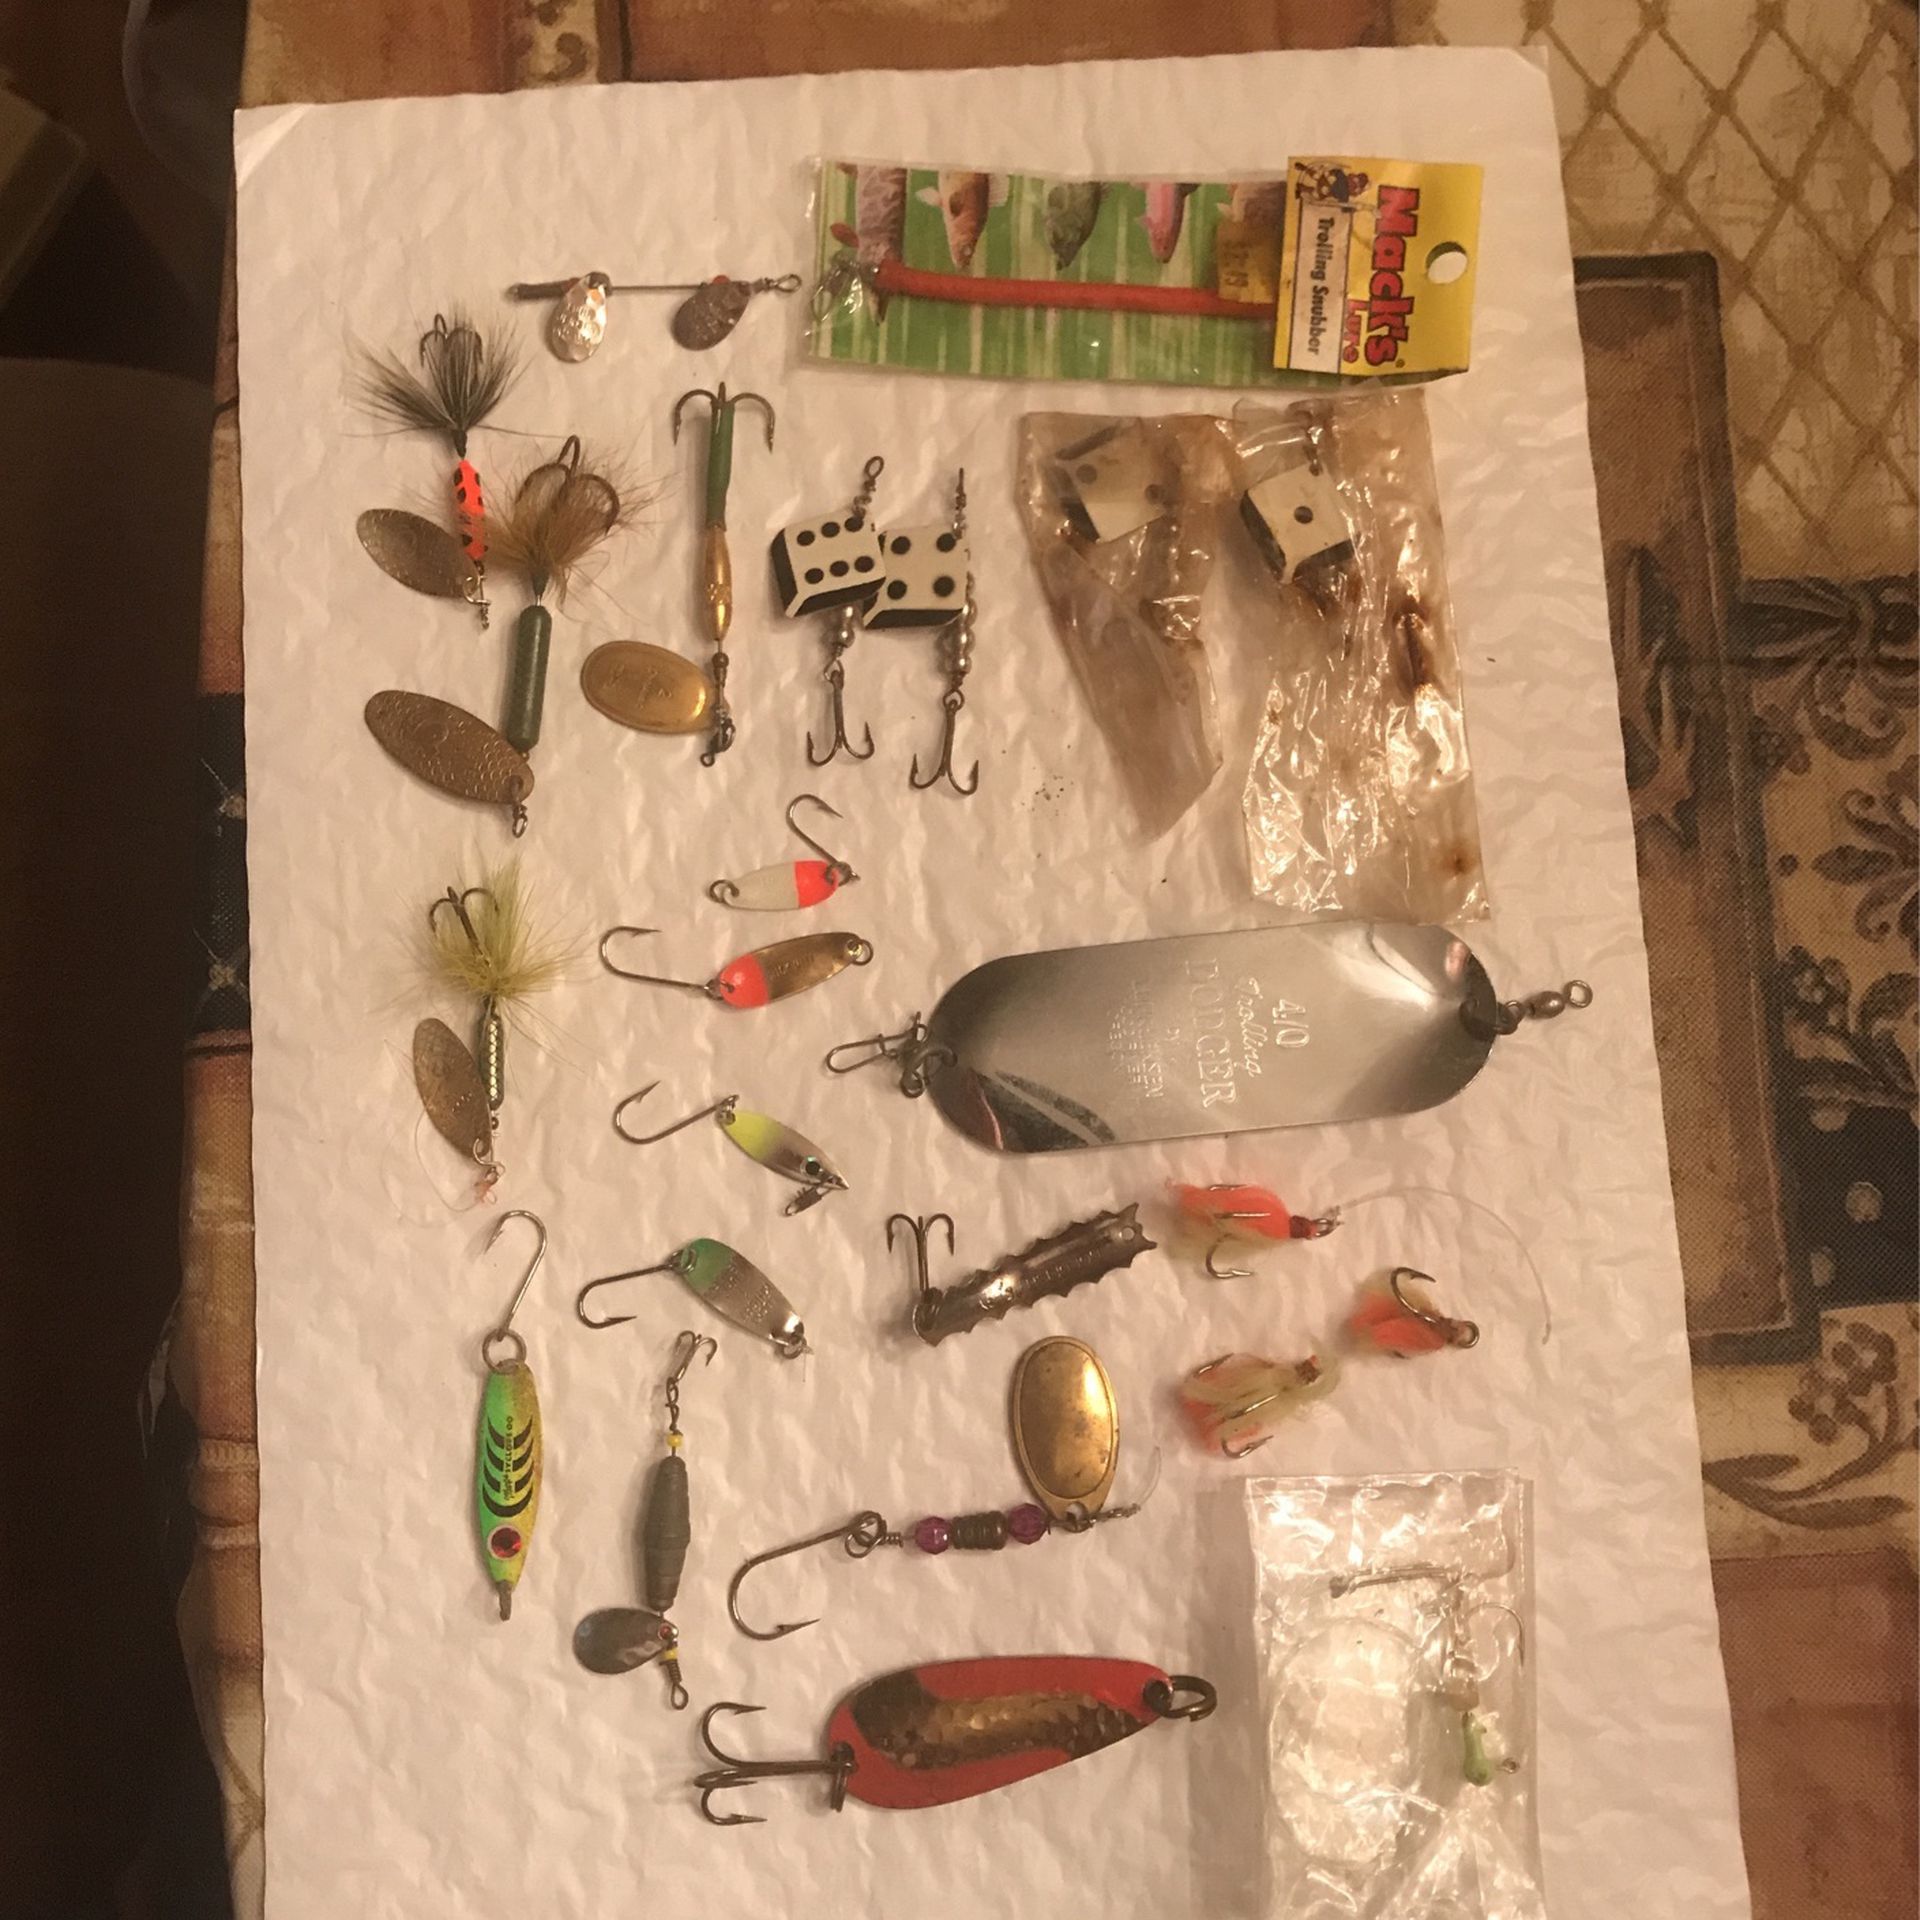 Trout Or Kokanee Fishing Gear